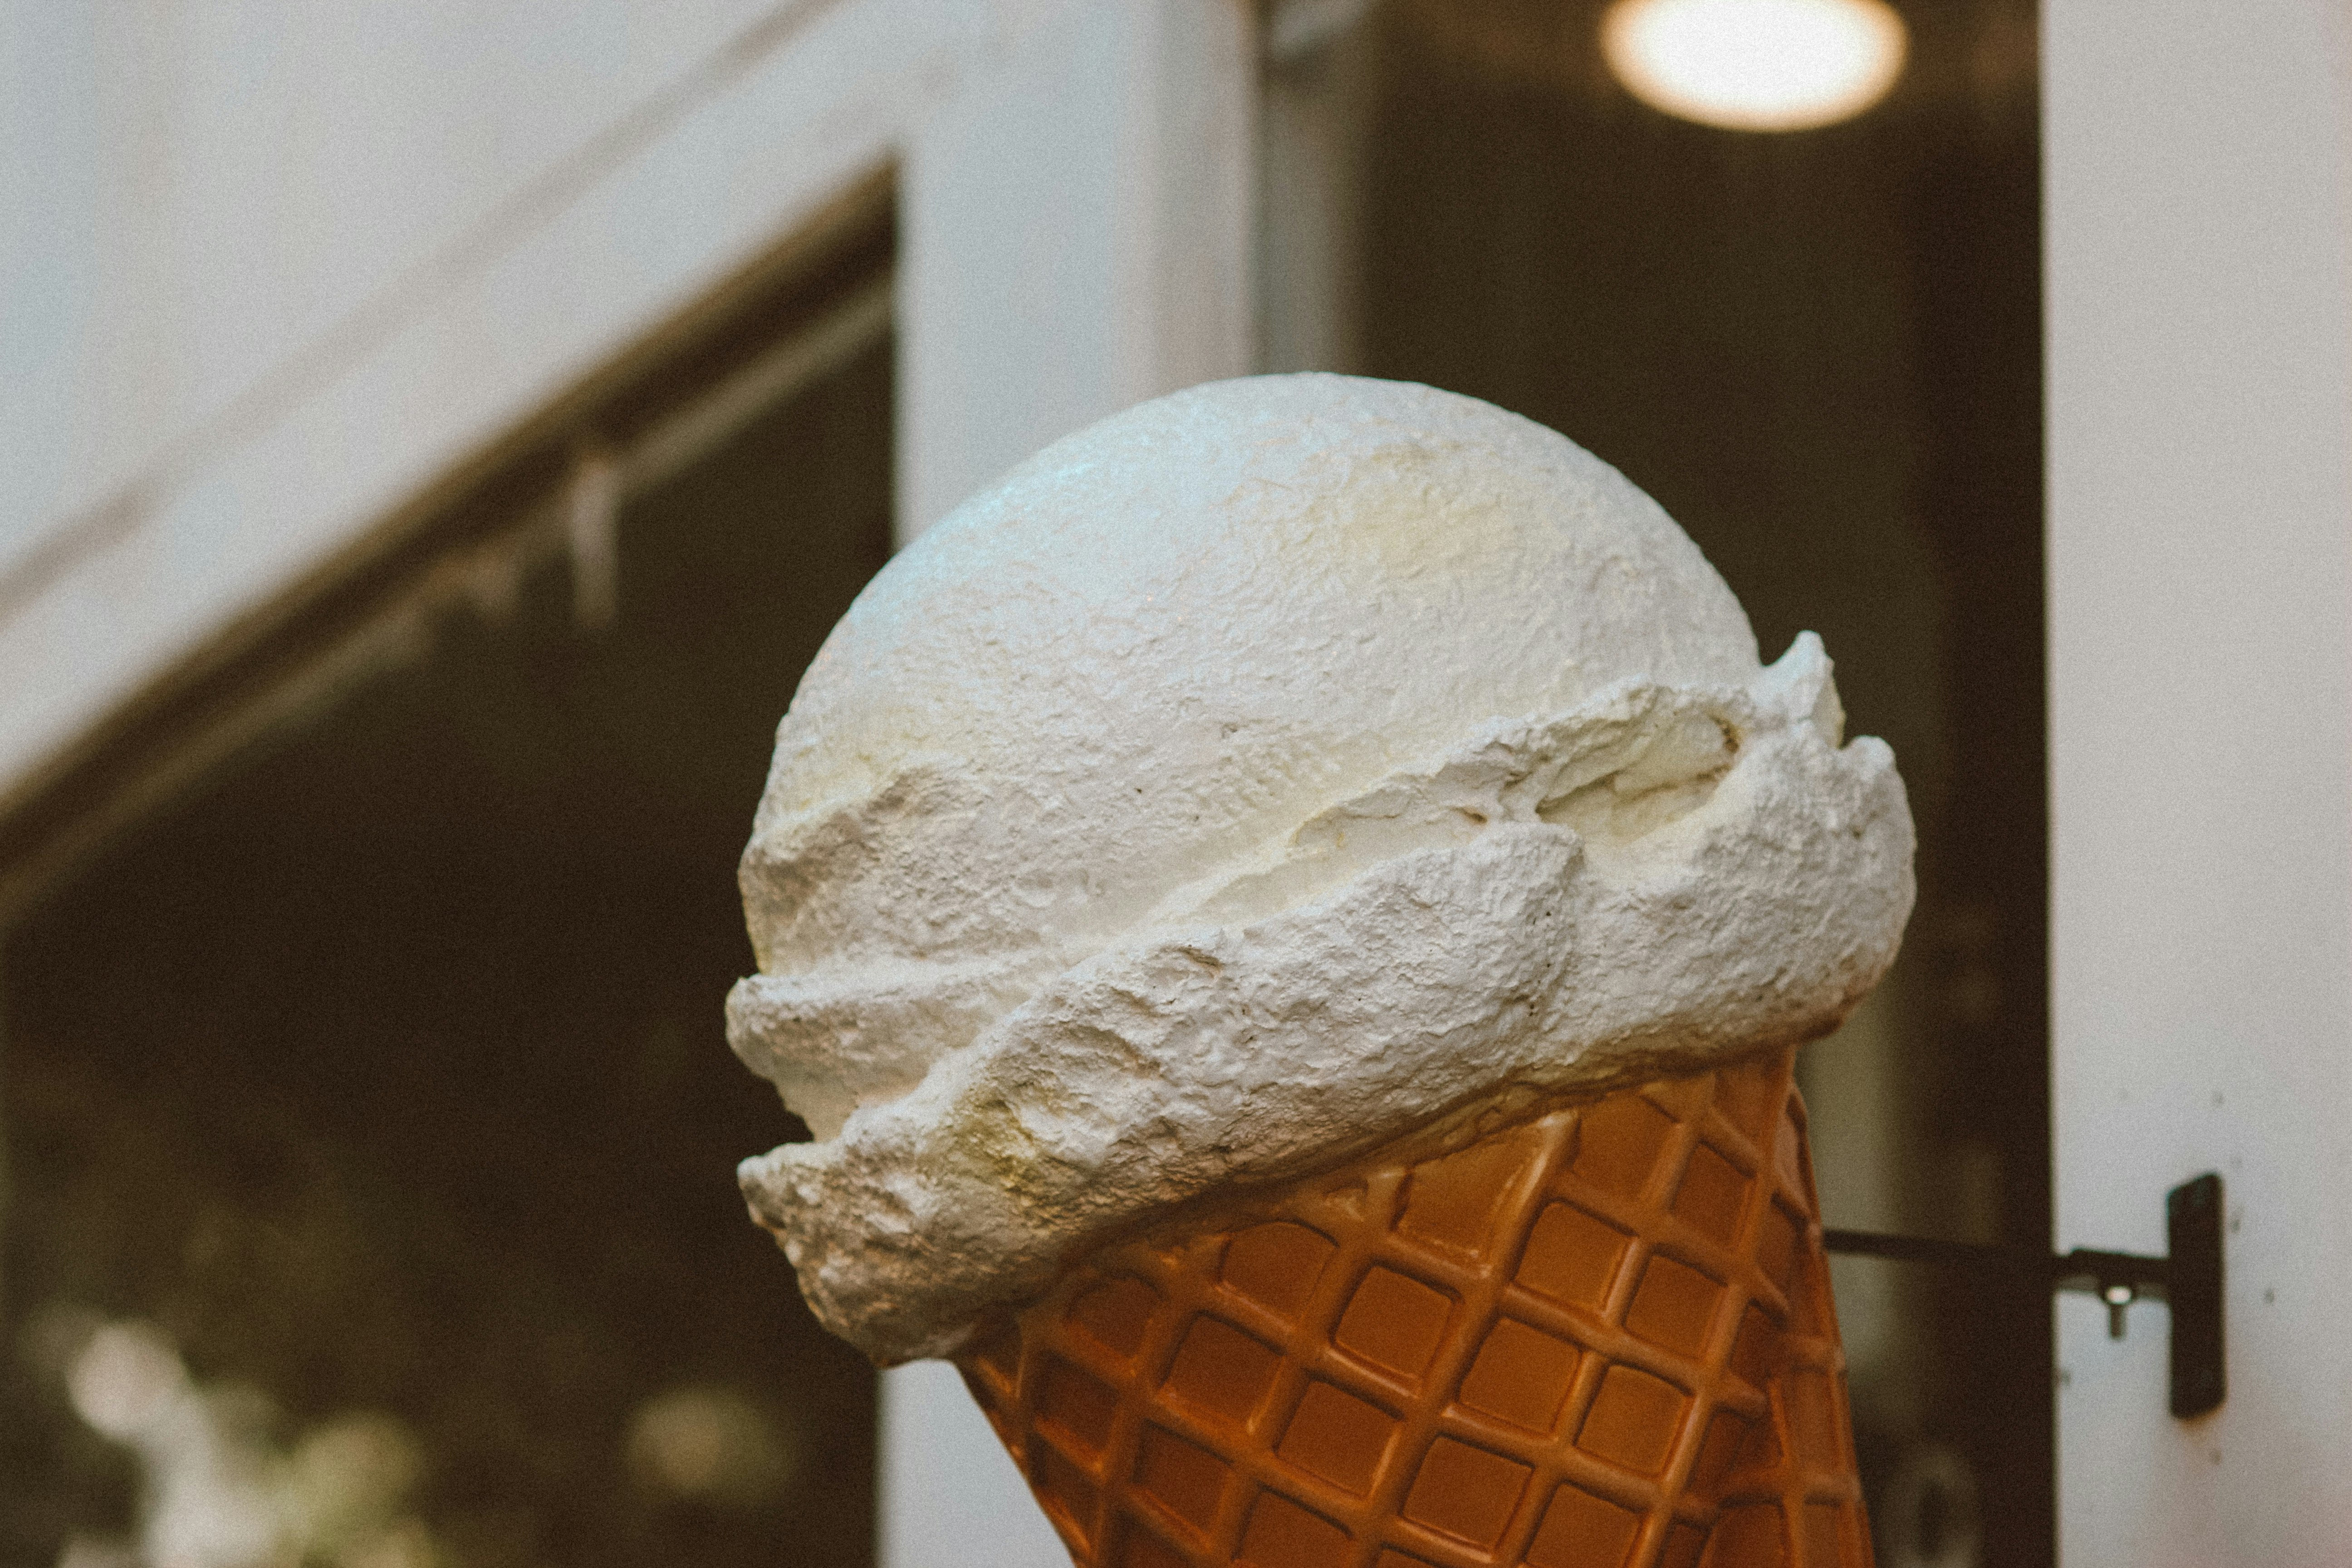 ice cream cone with cone